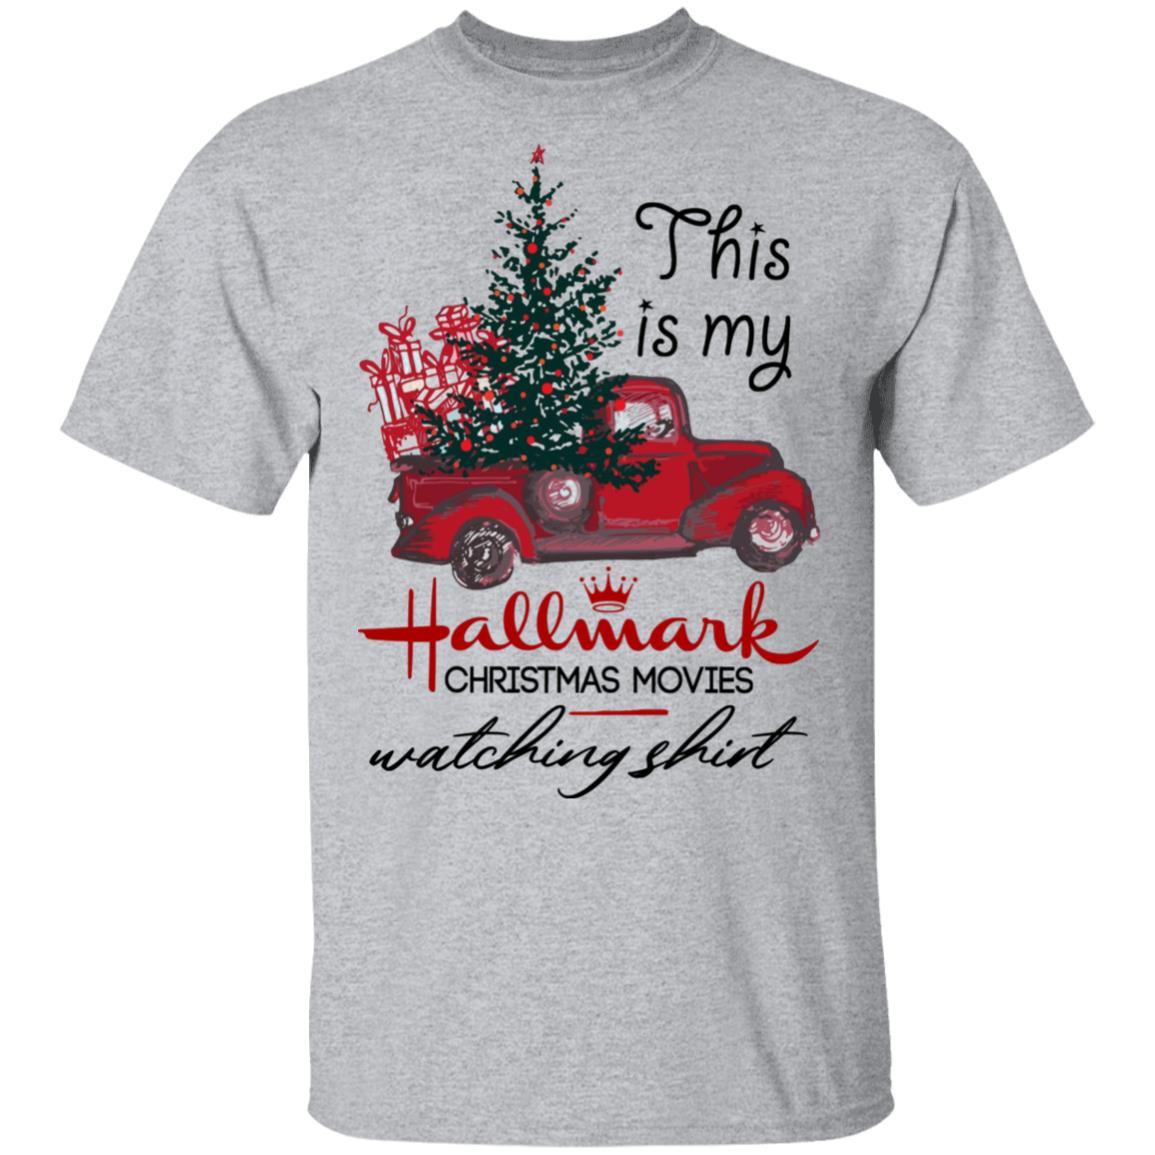 hallmark shirts for christmas